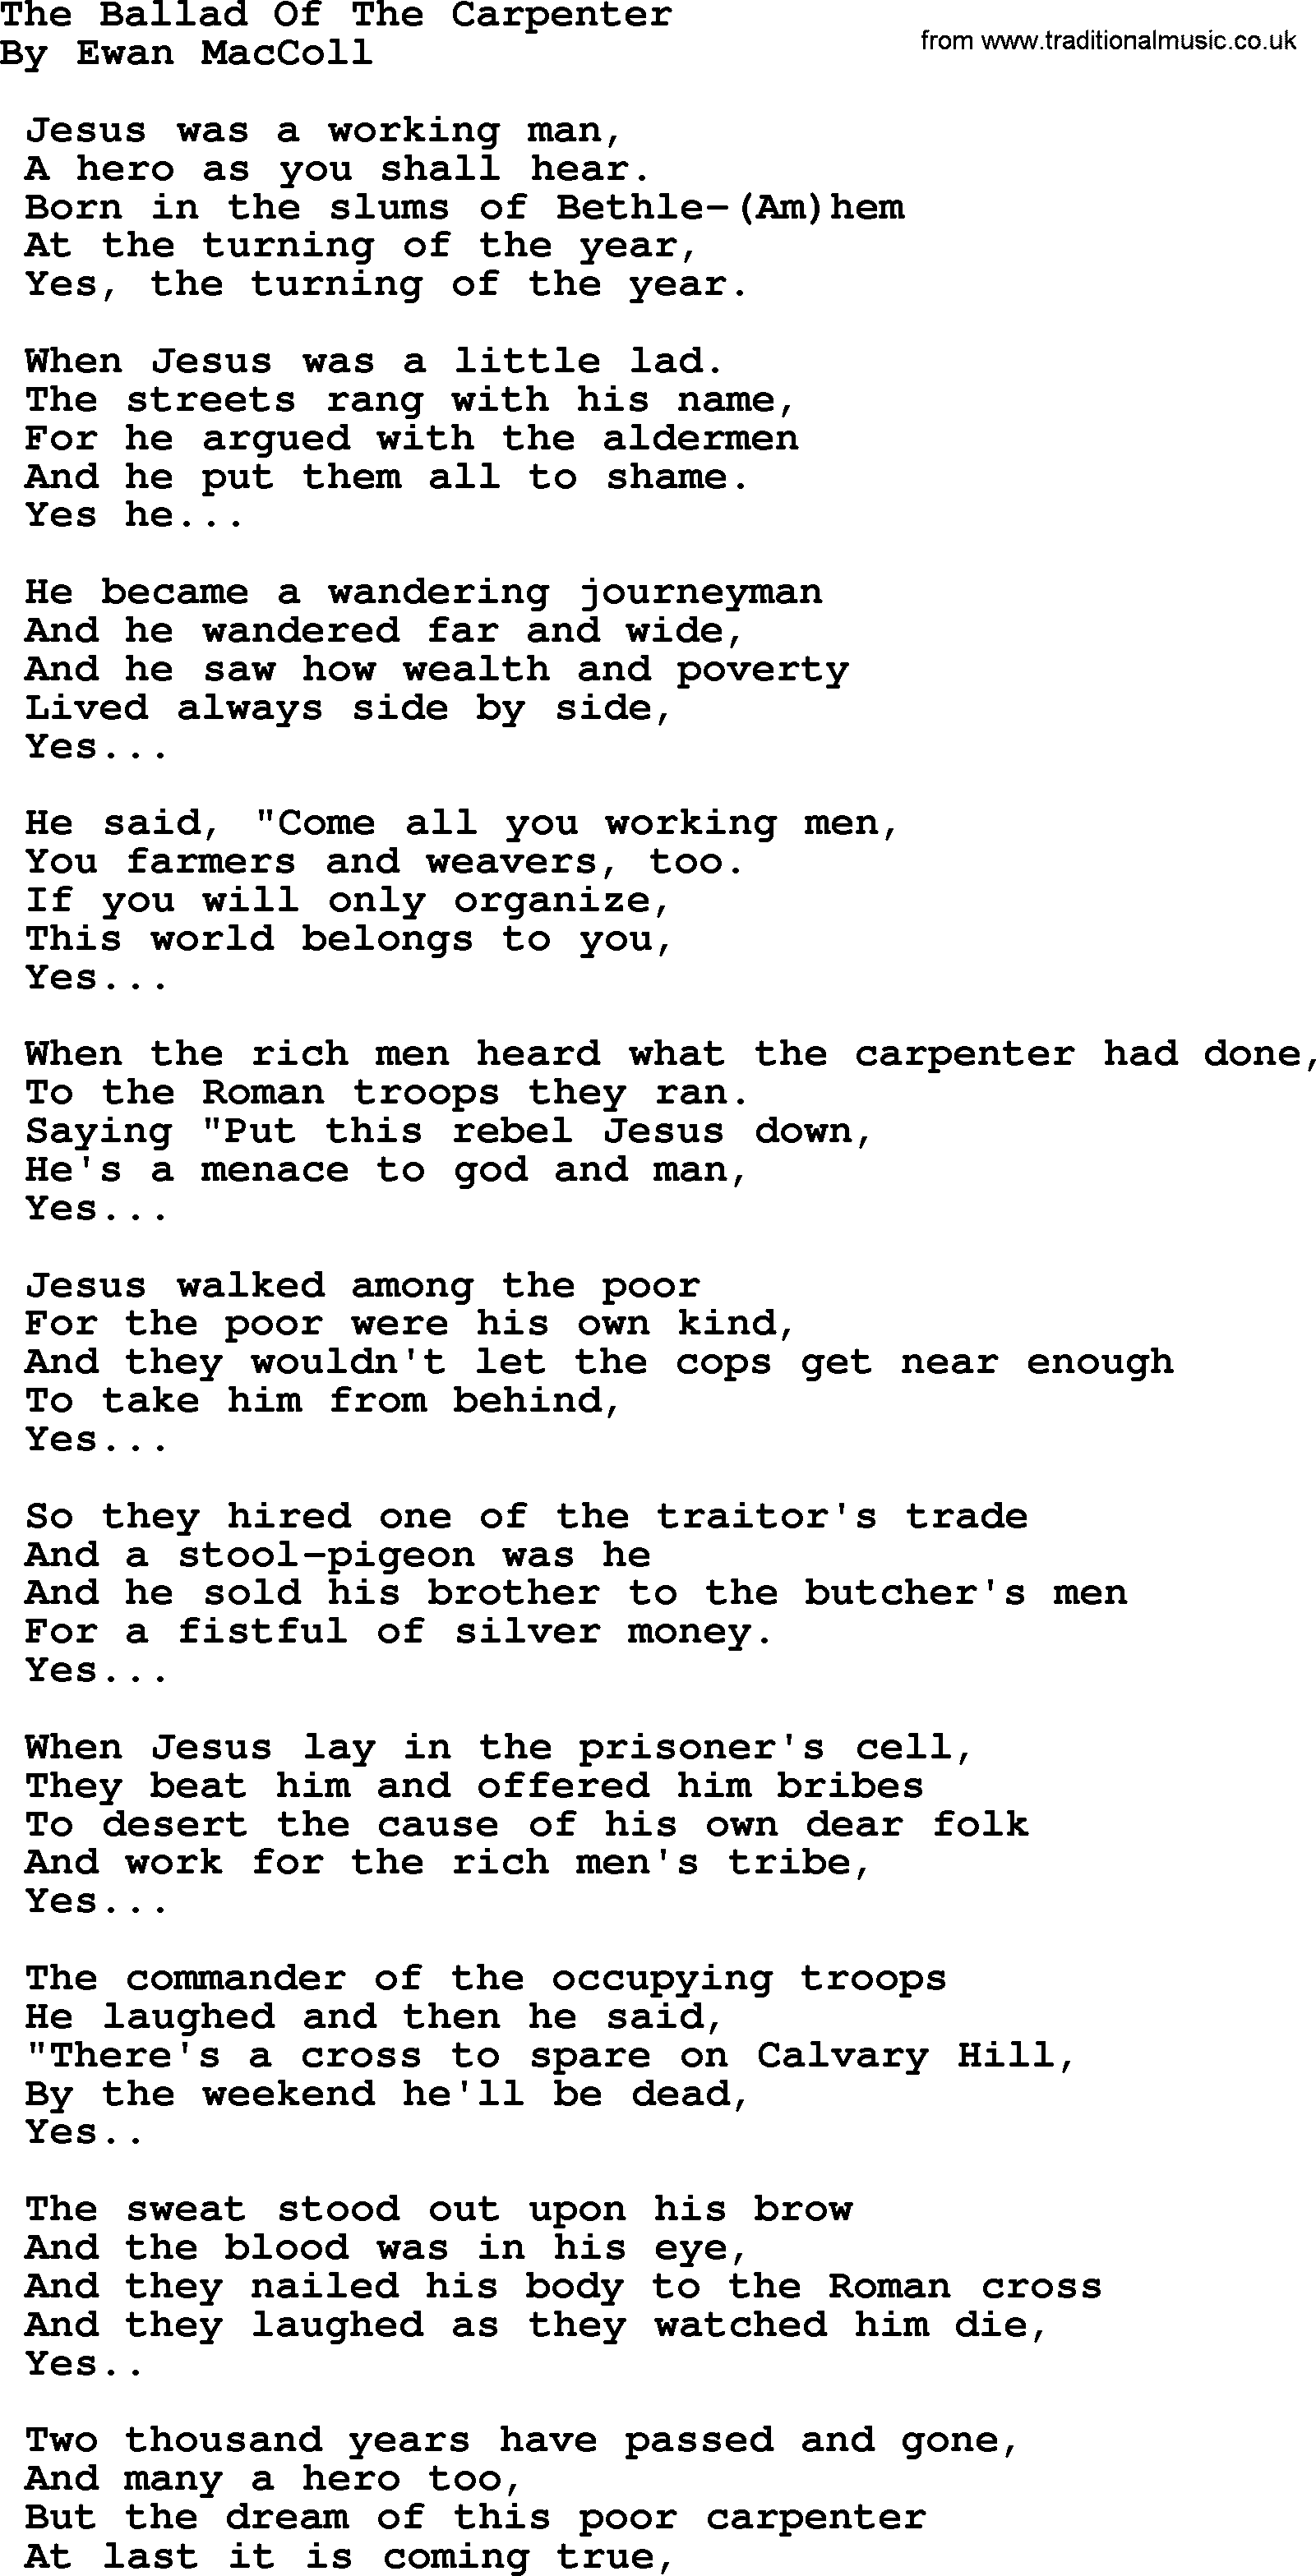 Phil Ochs song The Ballad Of The Carpenter, lyrics